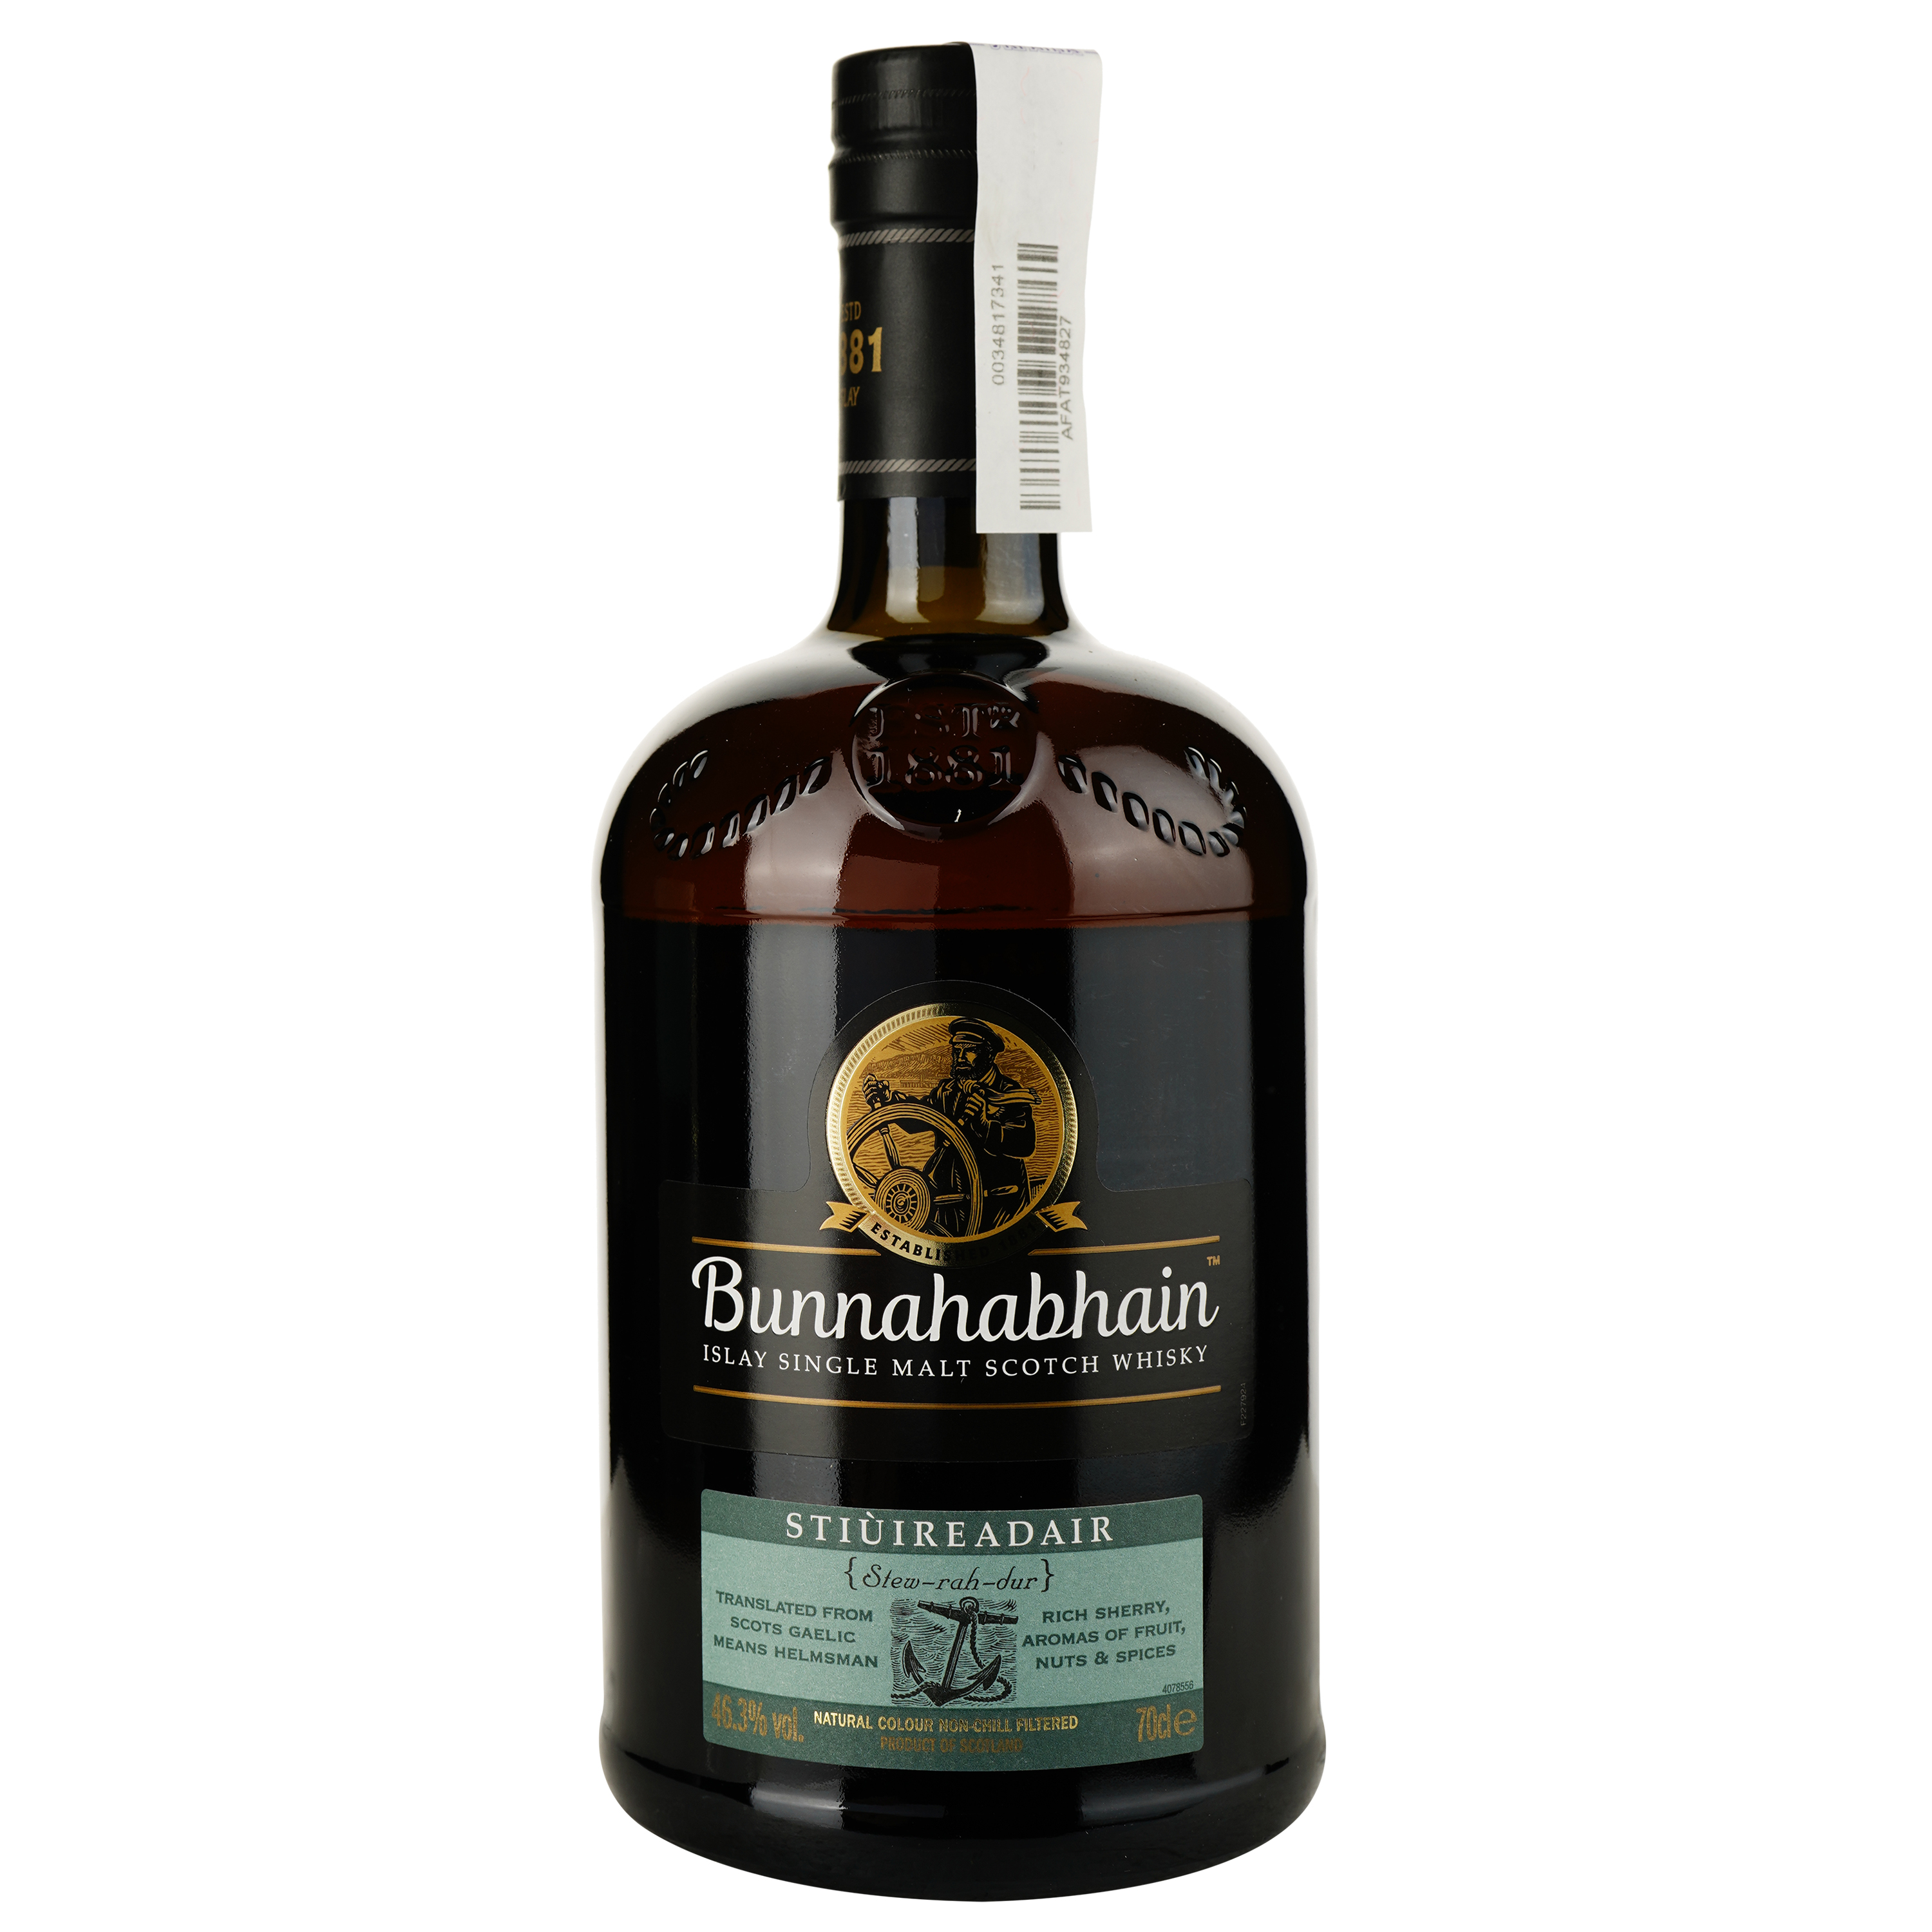 Виски Bunnahabhain Stiuireadair Single Malt Scotch Whisky 46.3% 0.7 л, в подарочной упаковке - фото 2